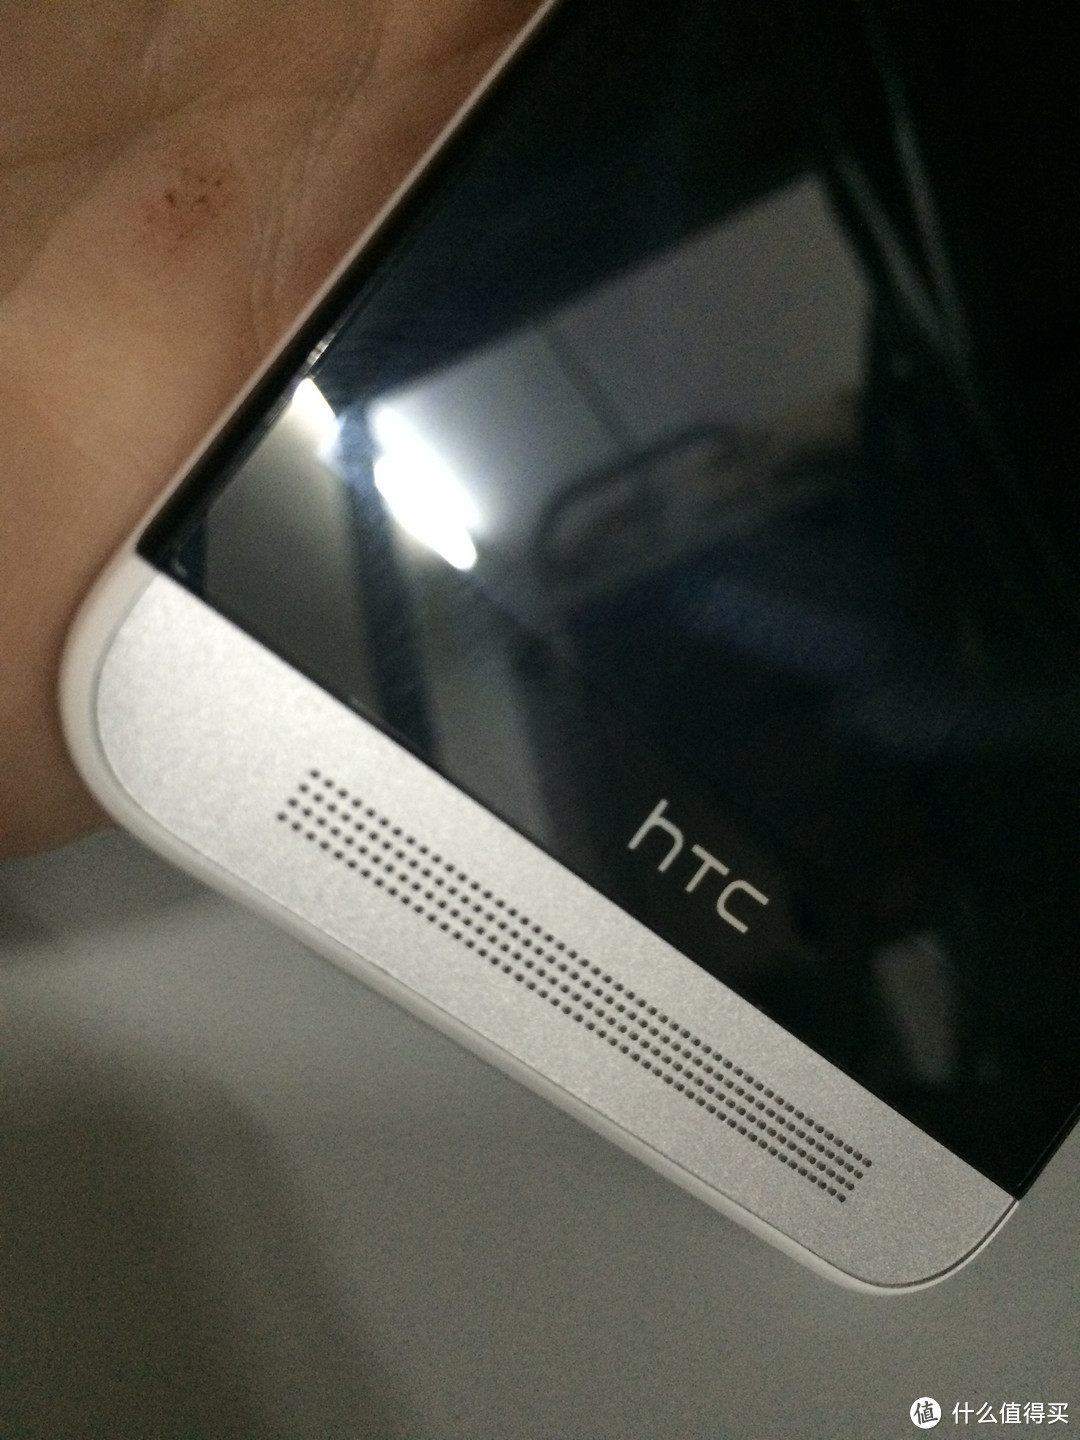 狙击1999，HTC ONE E8，聊聊与MX4、MI4的小差异